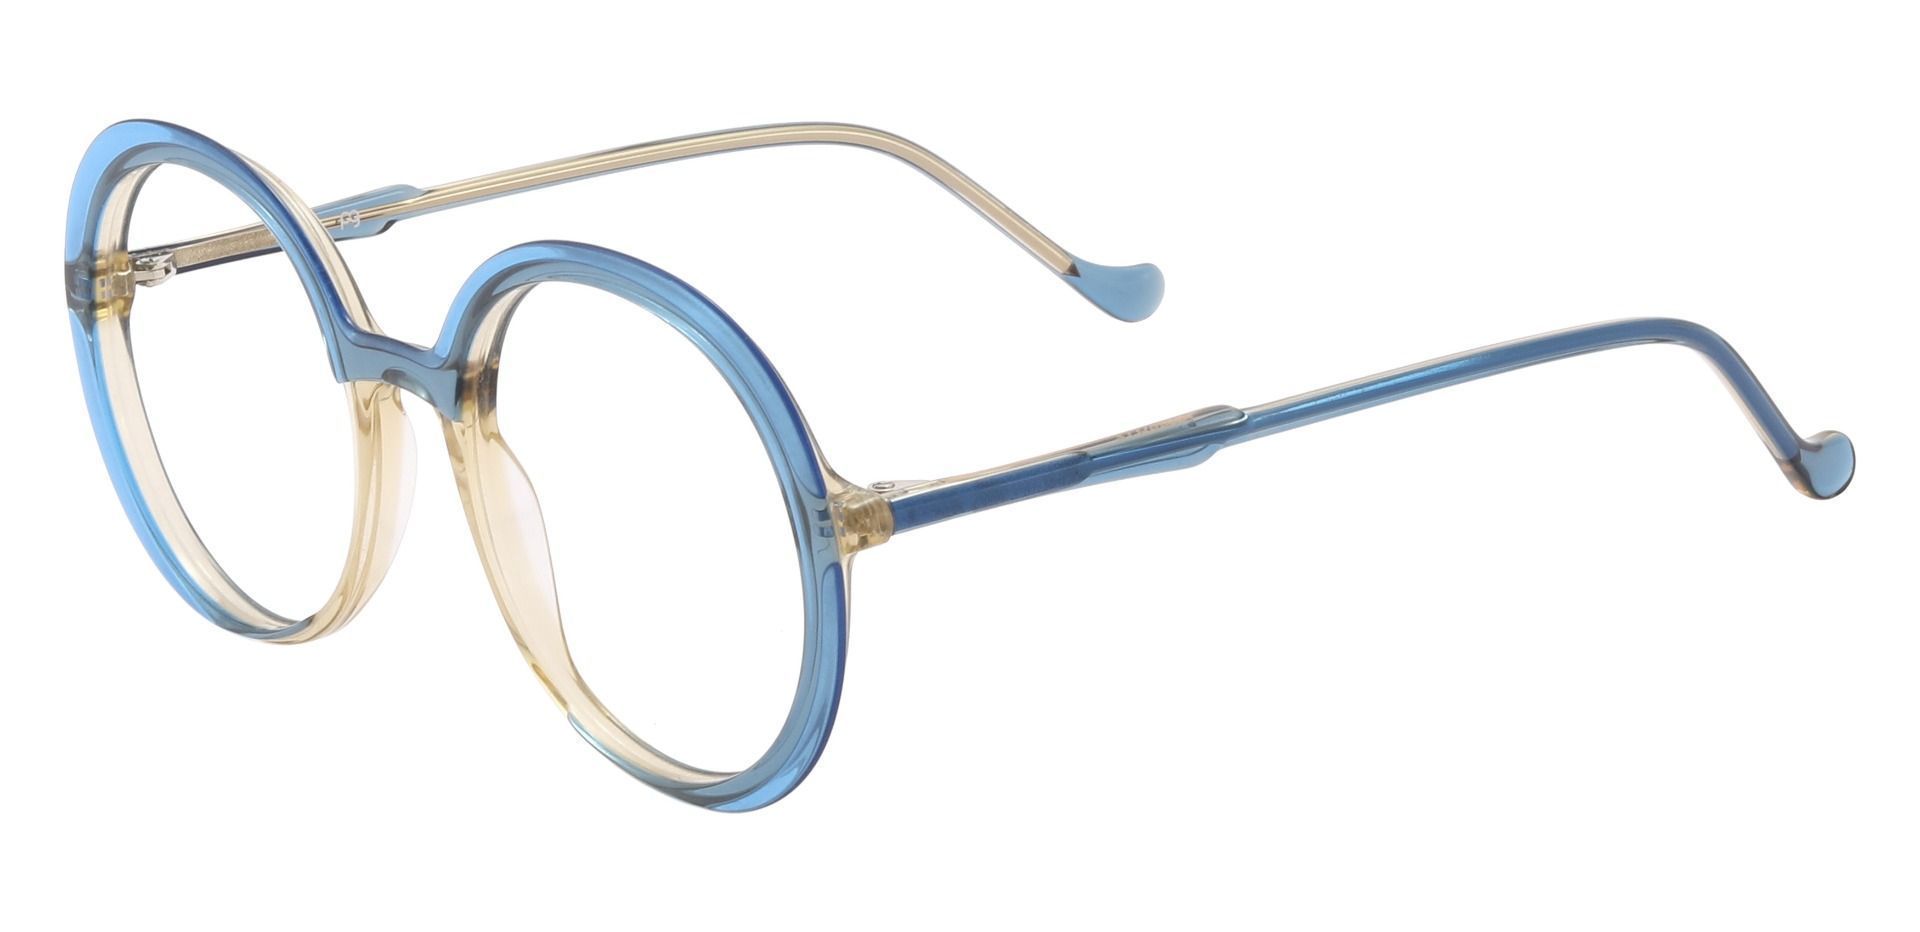 Peralta Round Prescription Glasses - Blue